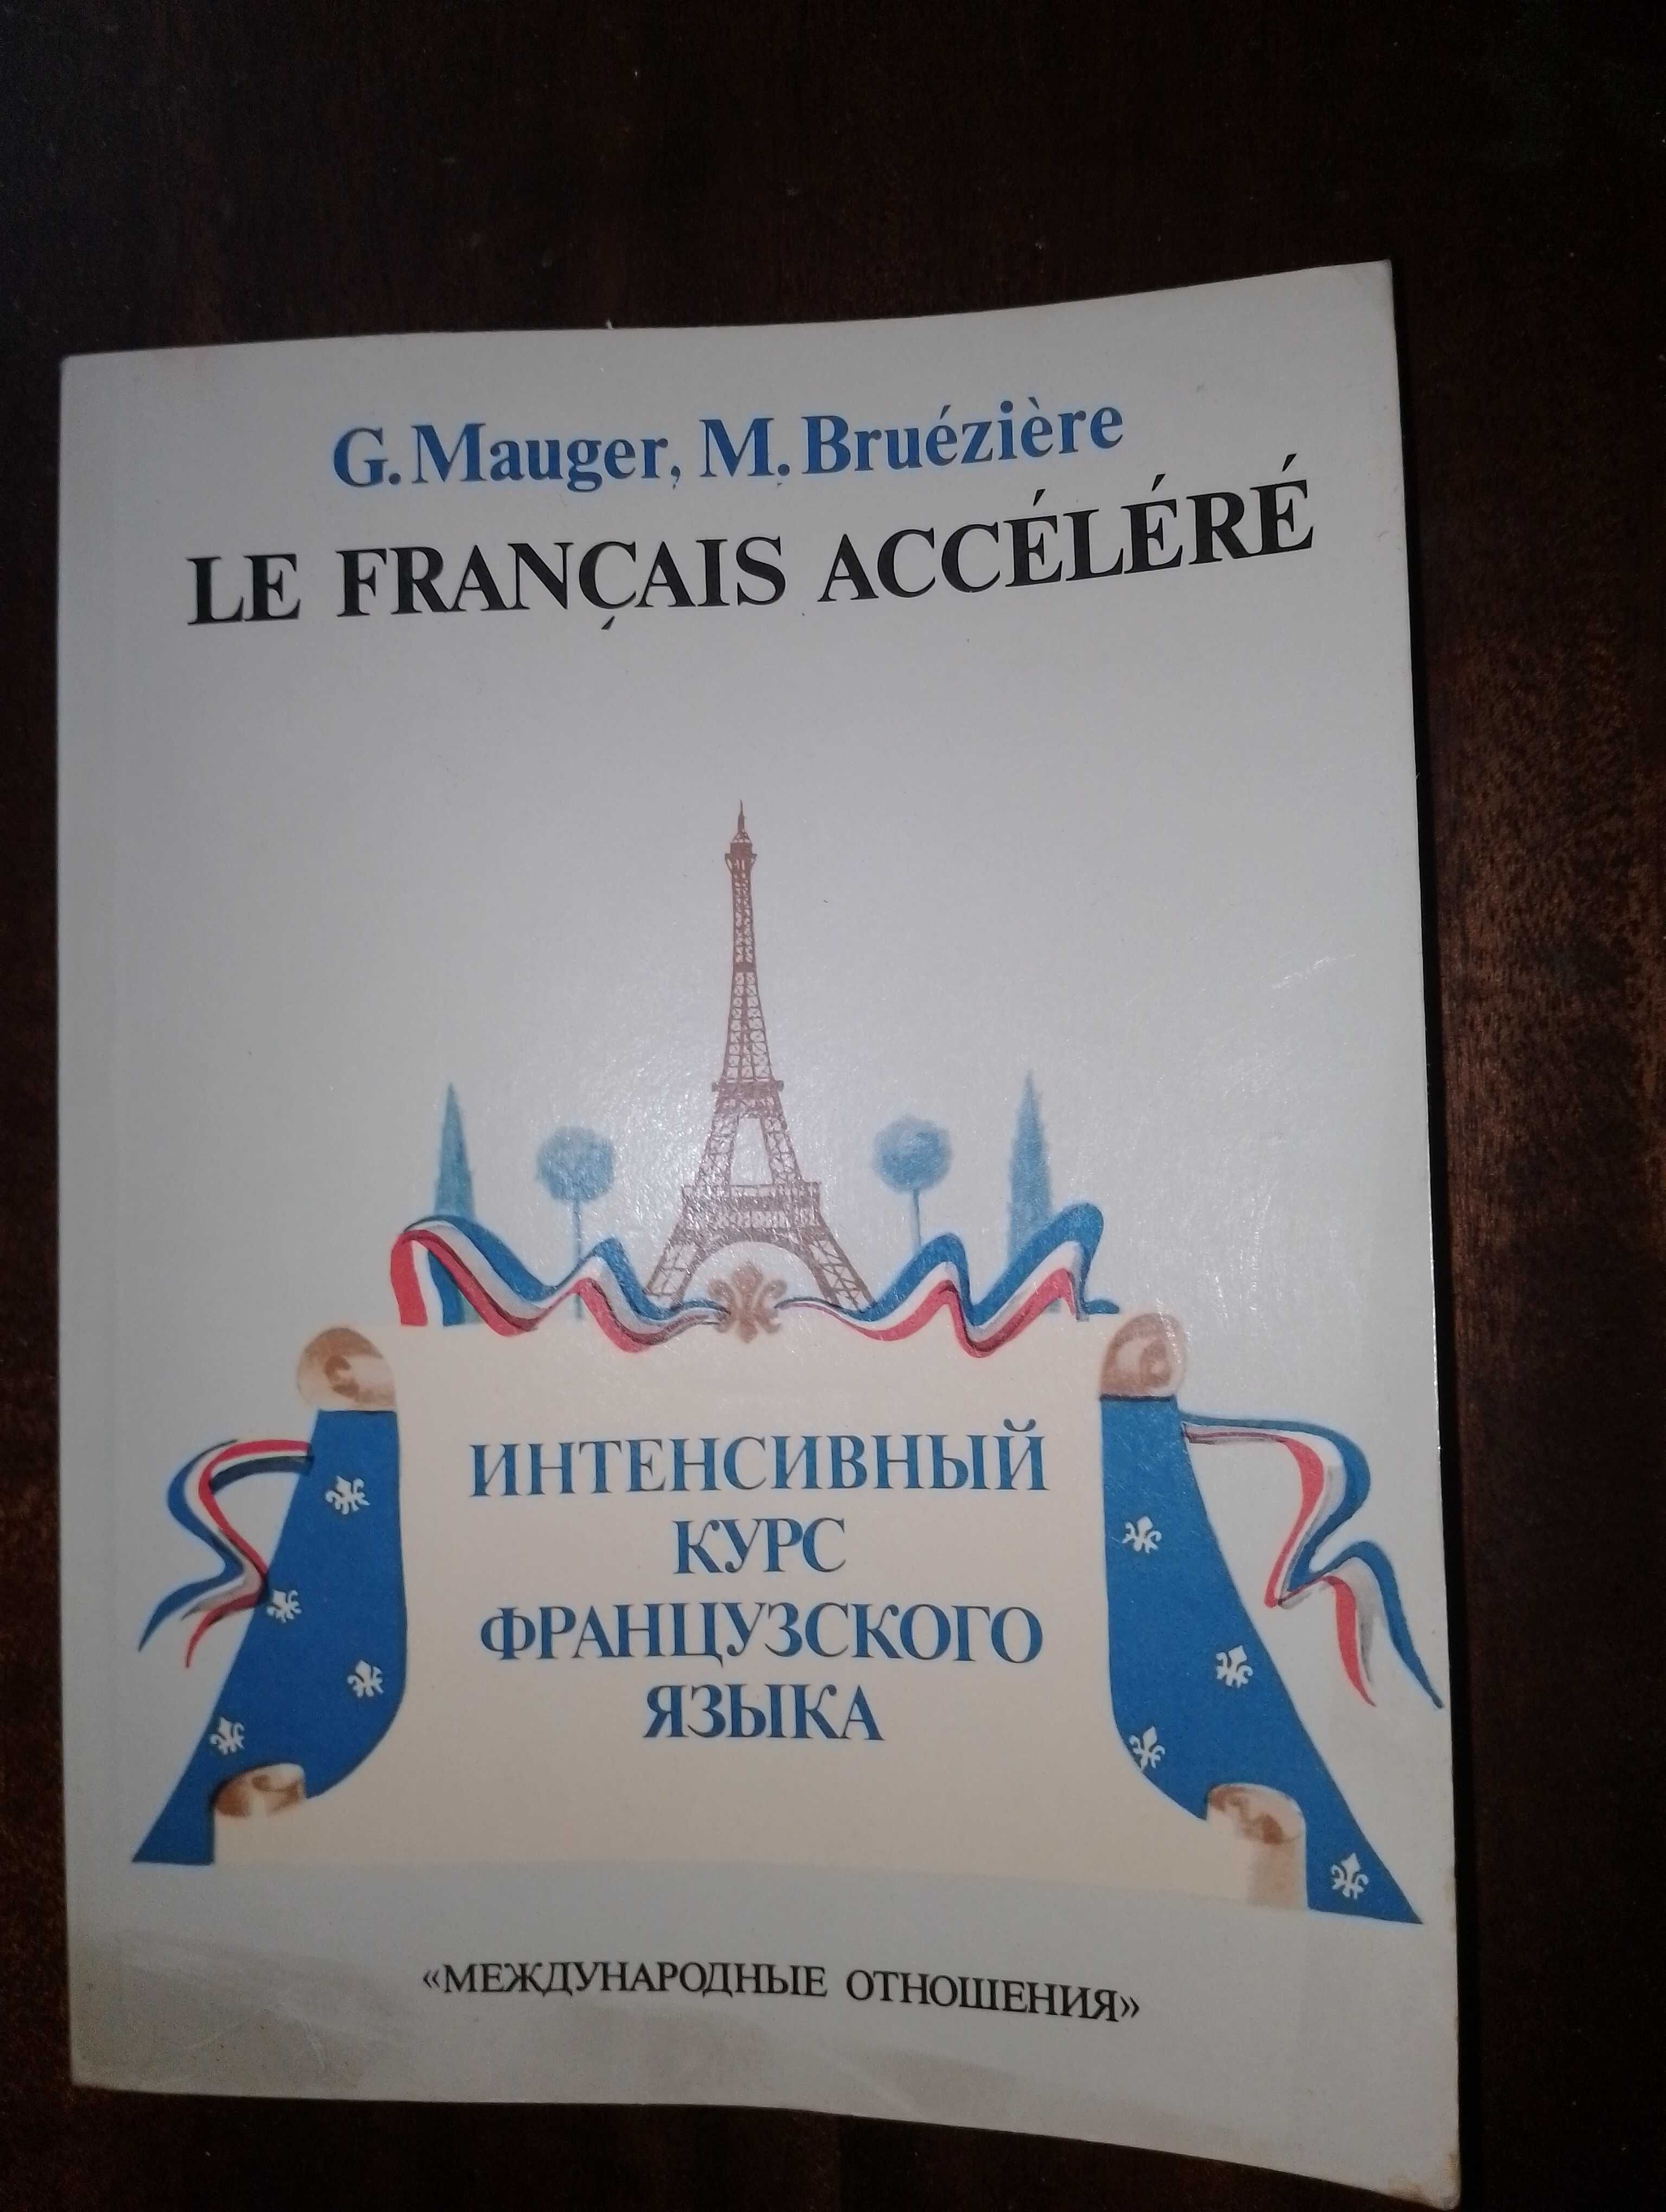 Интенсивный курс французского языка. G.Mauger, M.Brueziere